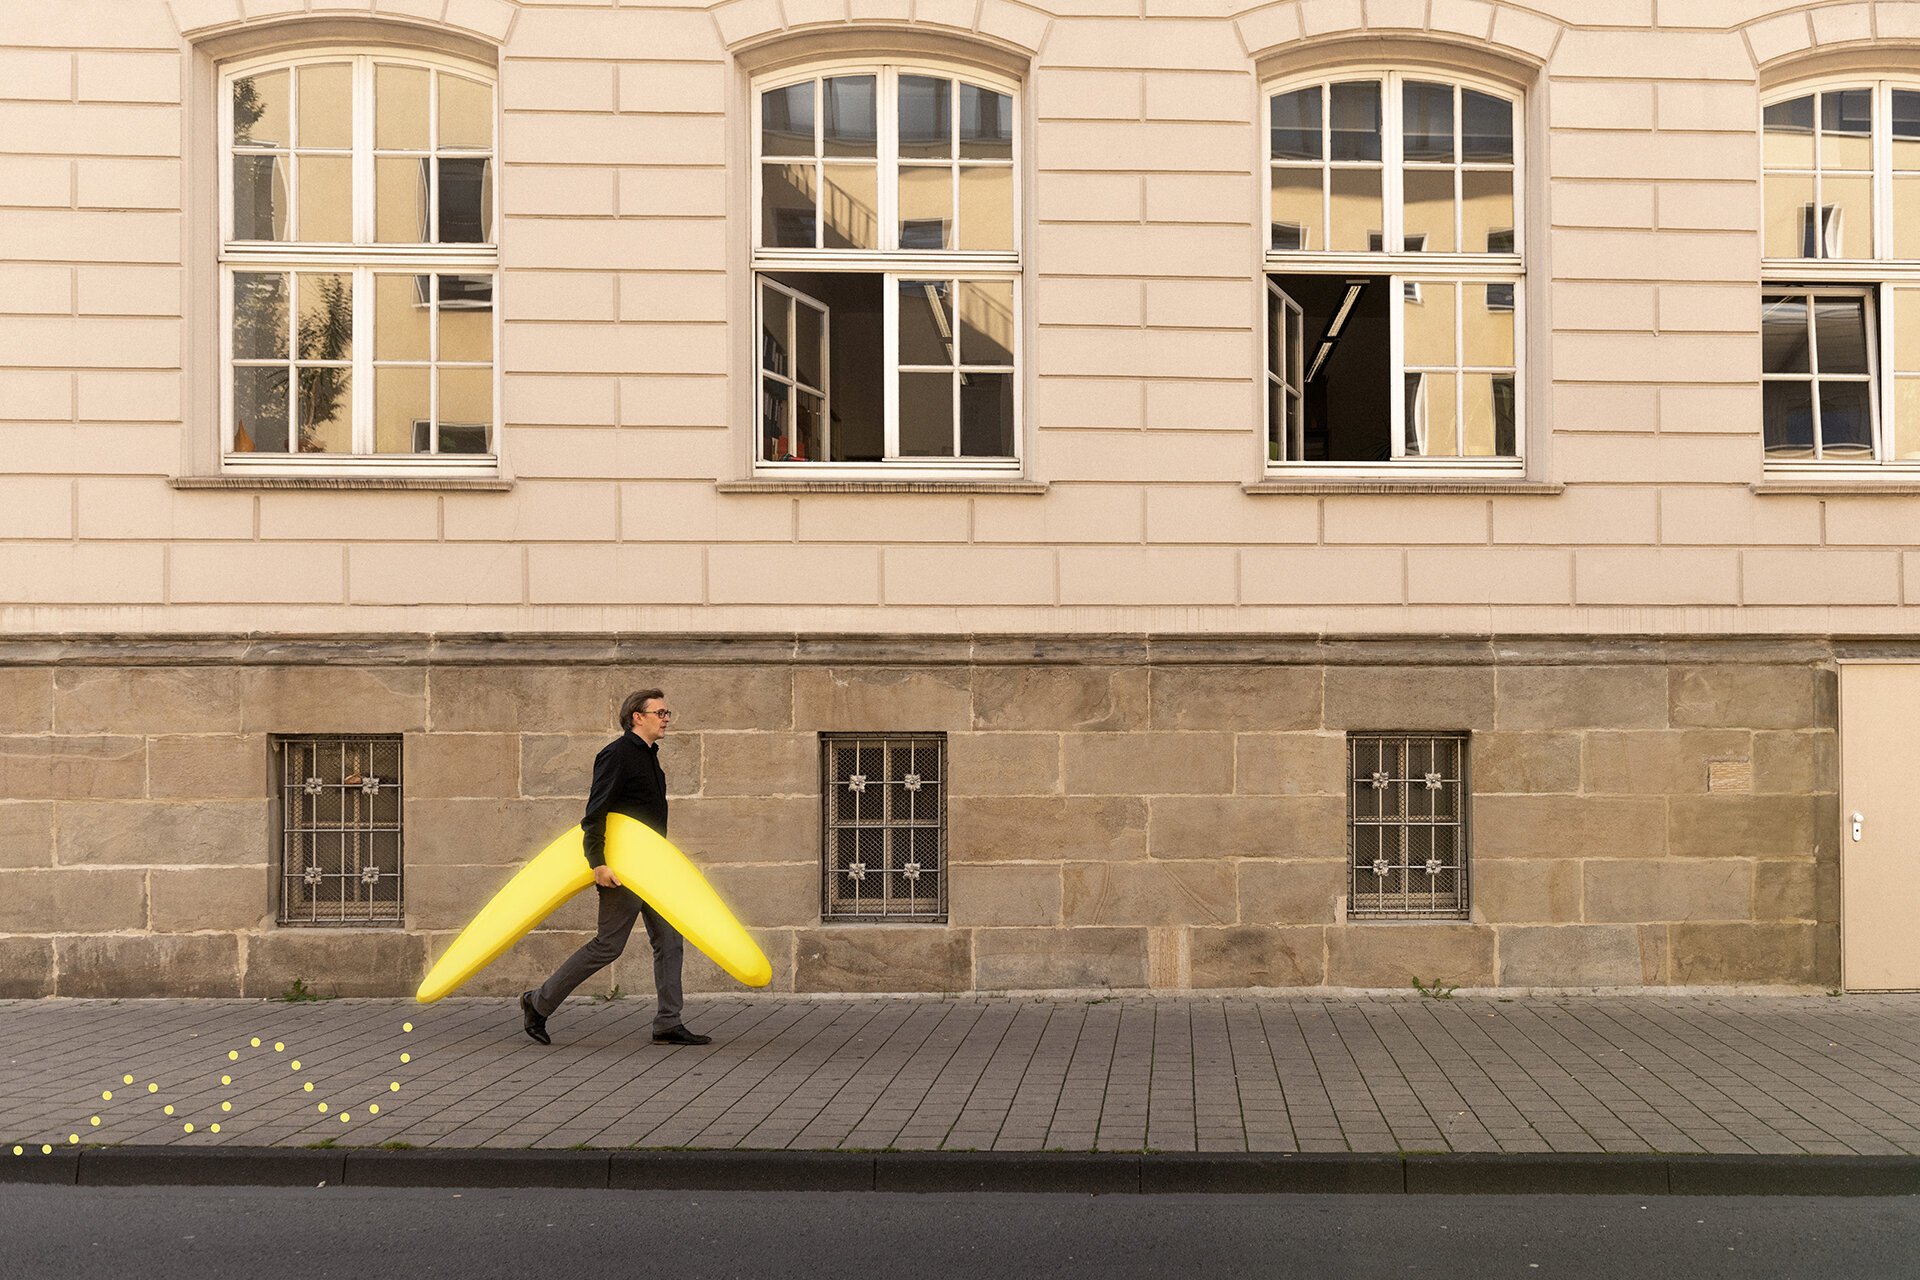 Mann trägt einen menschengroßen, gelben Bumerang unter dem Arm. Der Bumerang wird durch ein gepunktetes, grafisches, gelbes Element hervorgehoben. Im Hintergrund eine Häusermauer.